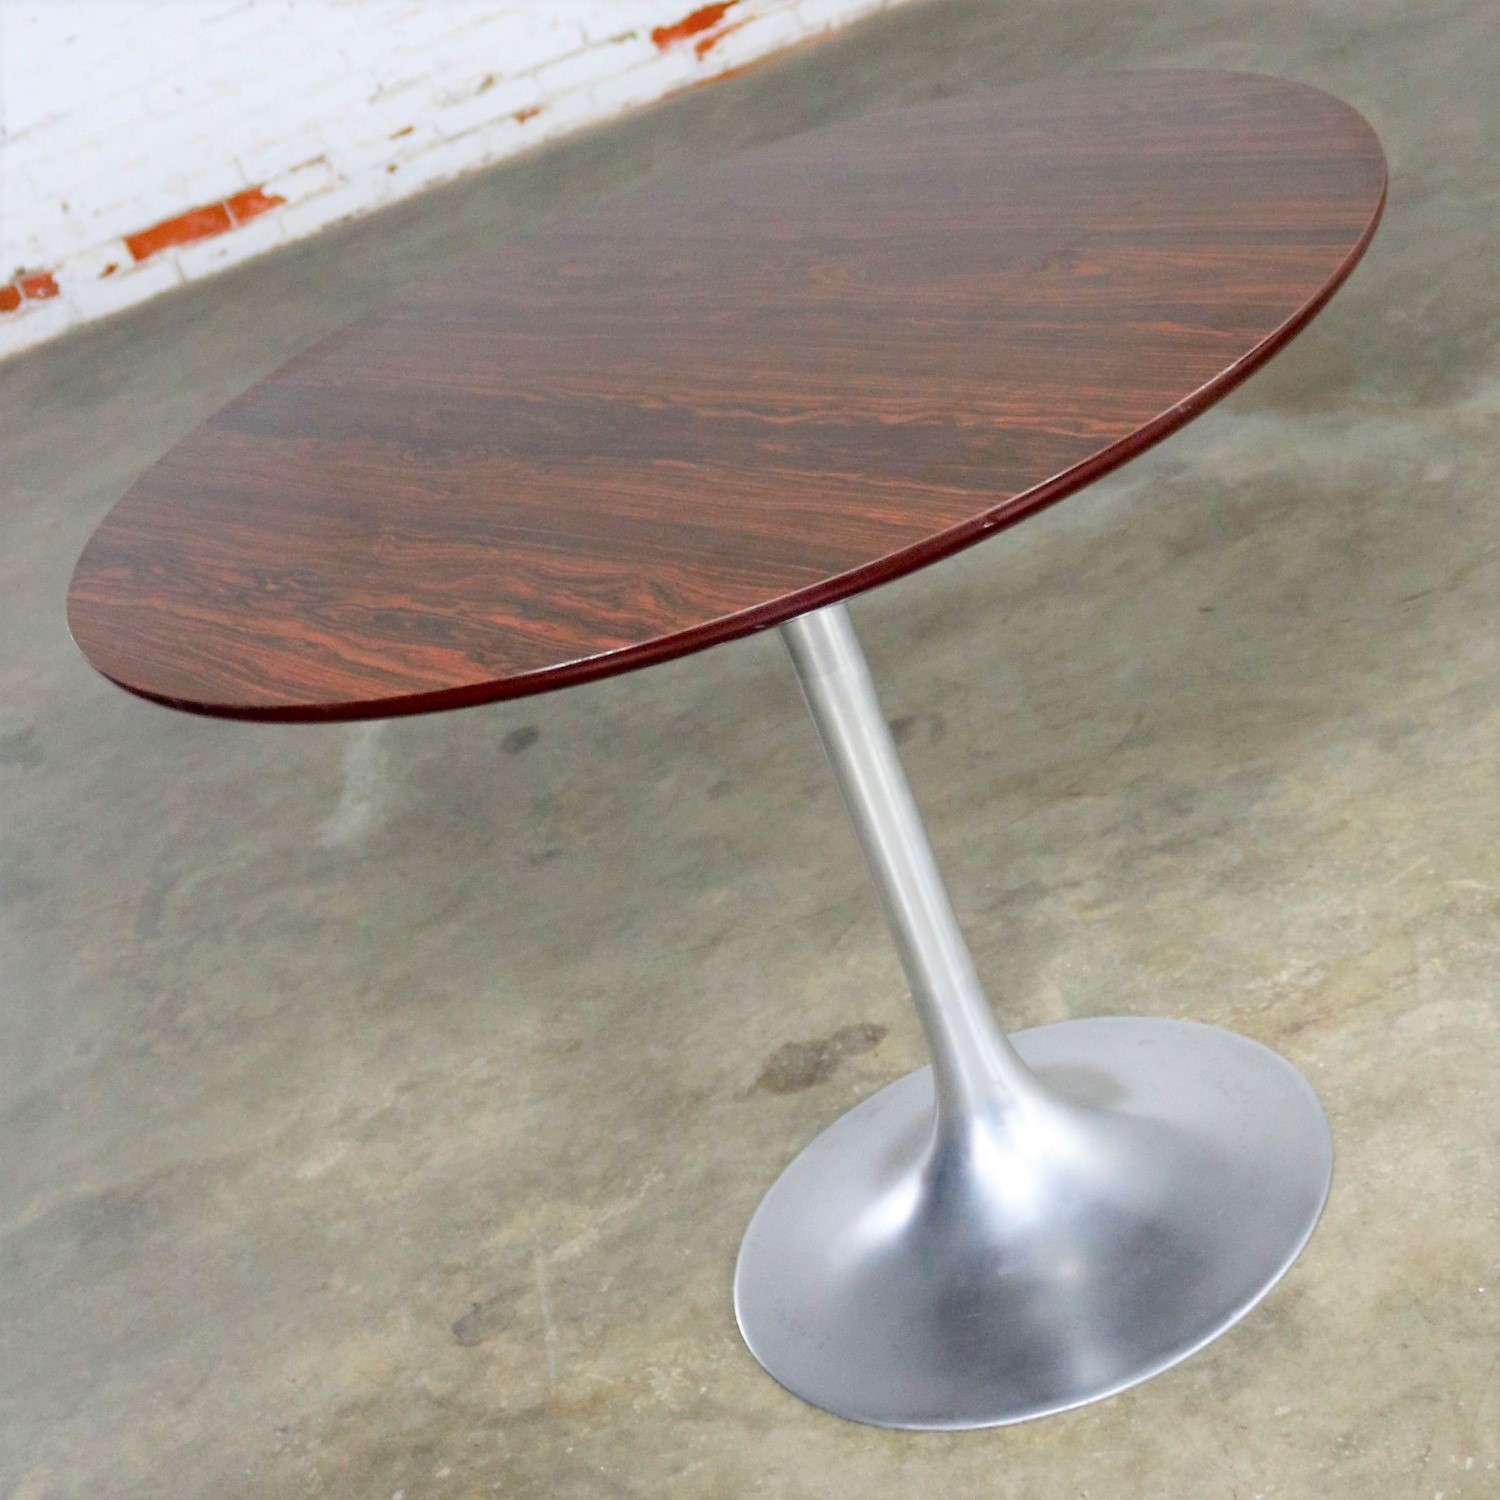 Saarinen Style Tulip Base Table in Aluminum with Woodgrain Laminate Top